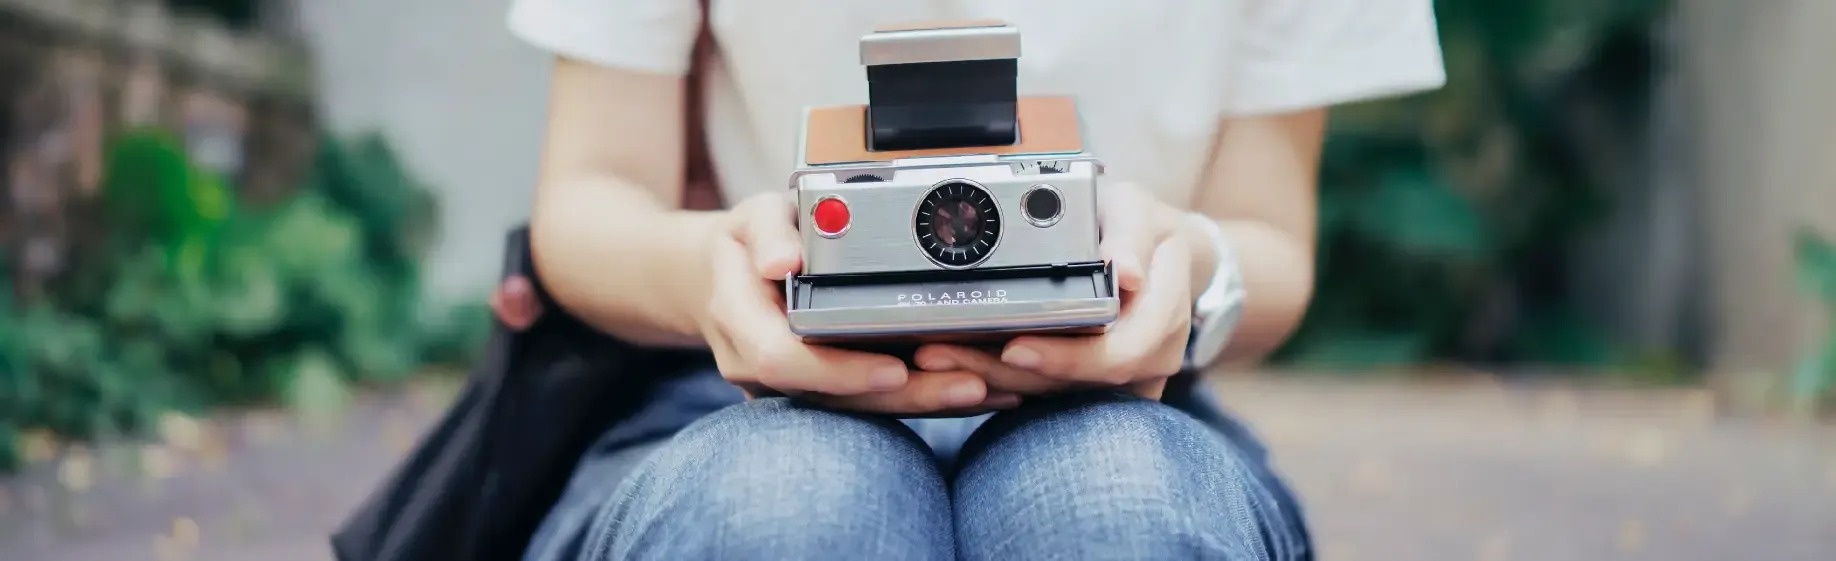 una persona sostiene una cámara polaroid en sus manos .